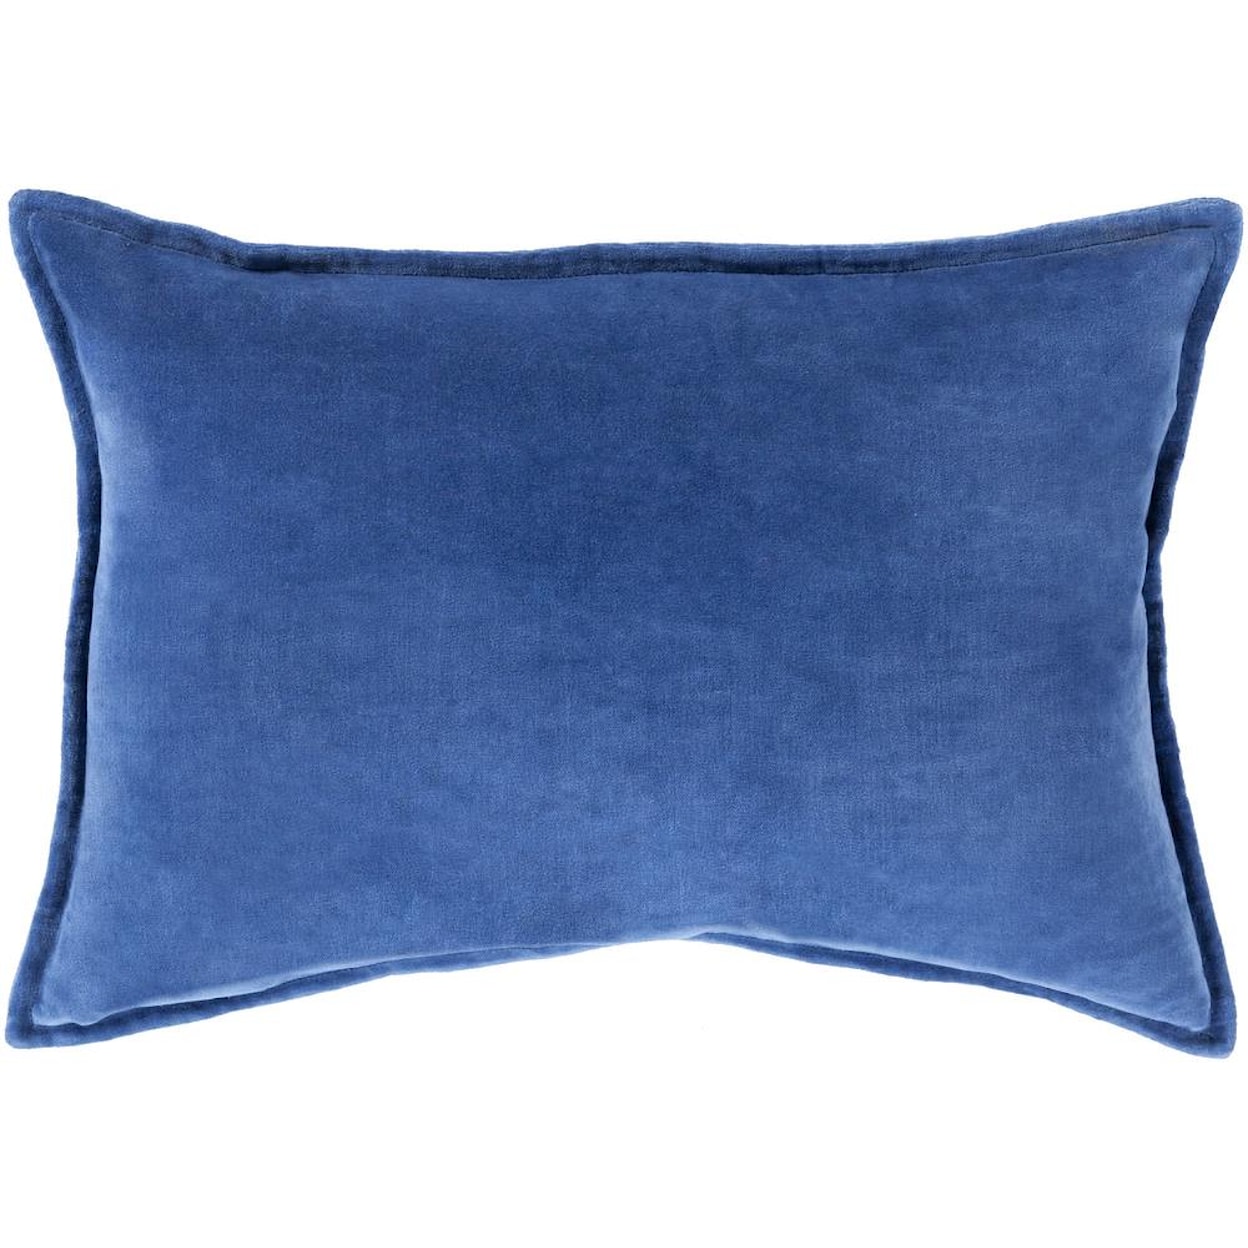 Surya Pillows 13" x 19" Decorative Pillow